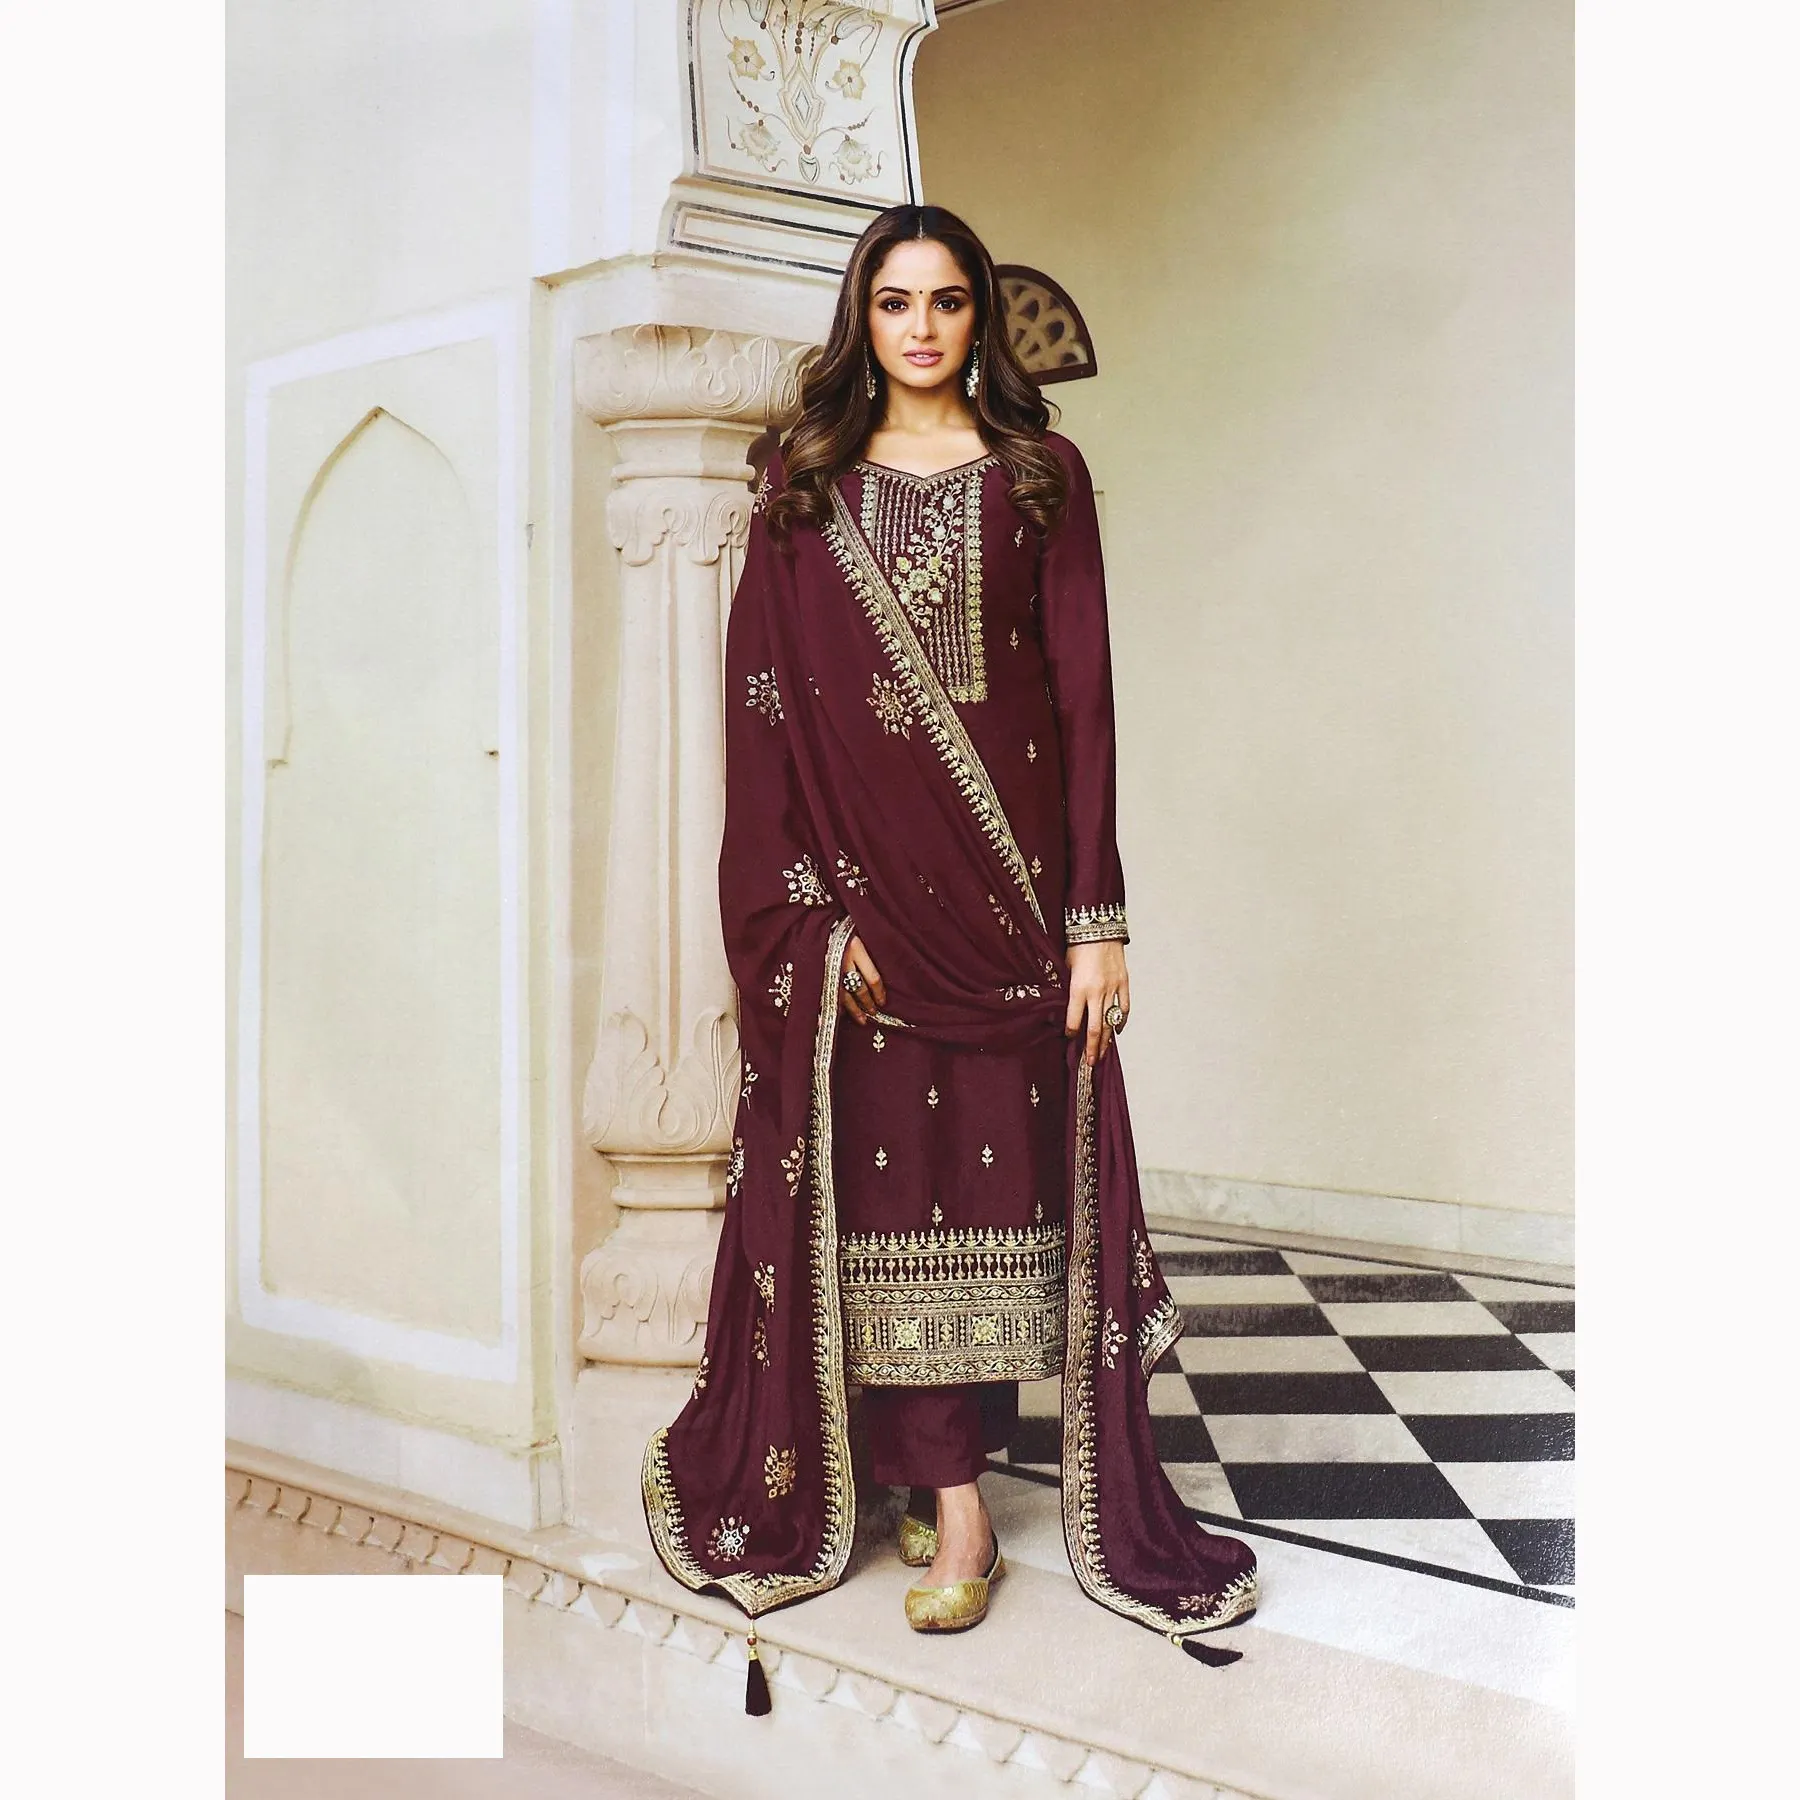 Moderno stilista indiano Pakistani colore giallo chiaro abito stile per le donne prodotto per la vendita